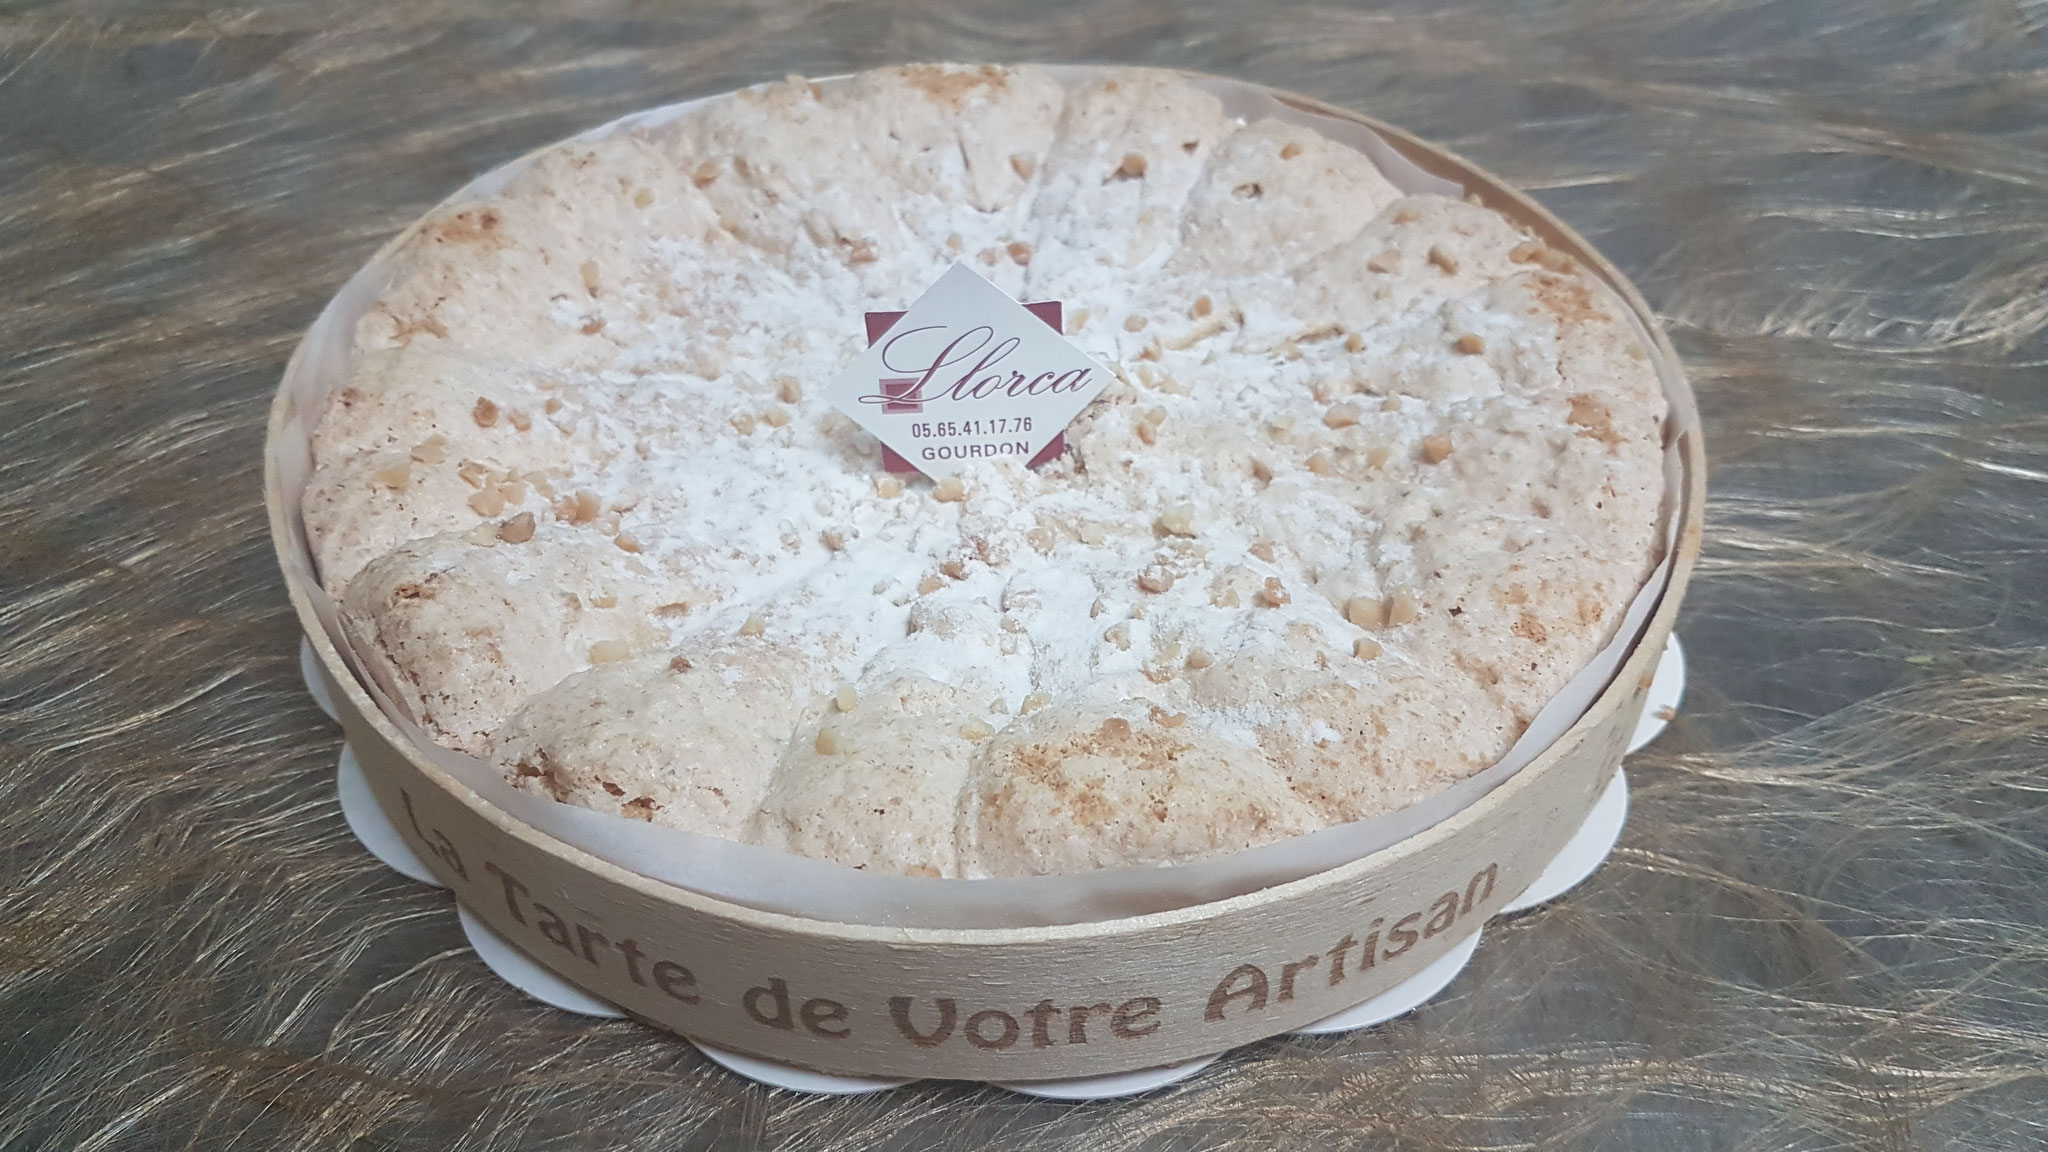 SAFRANIER: Biscuit macaron au safran, compotée de poires au safran du Quercy